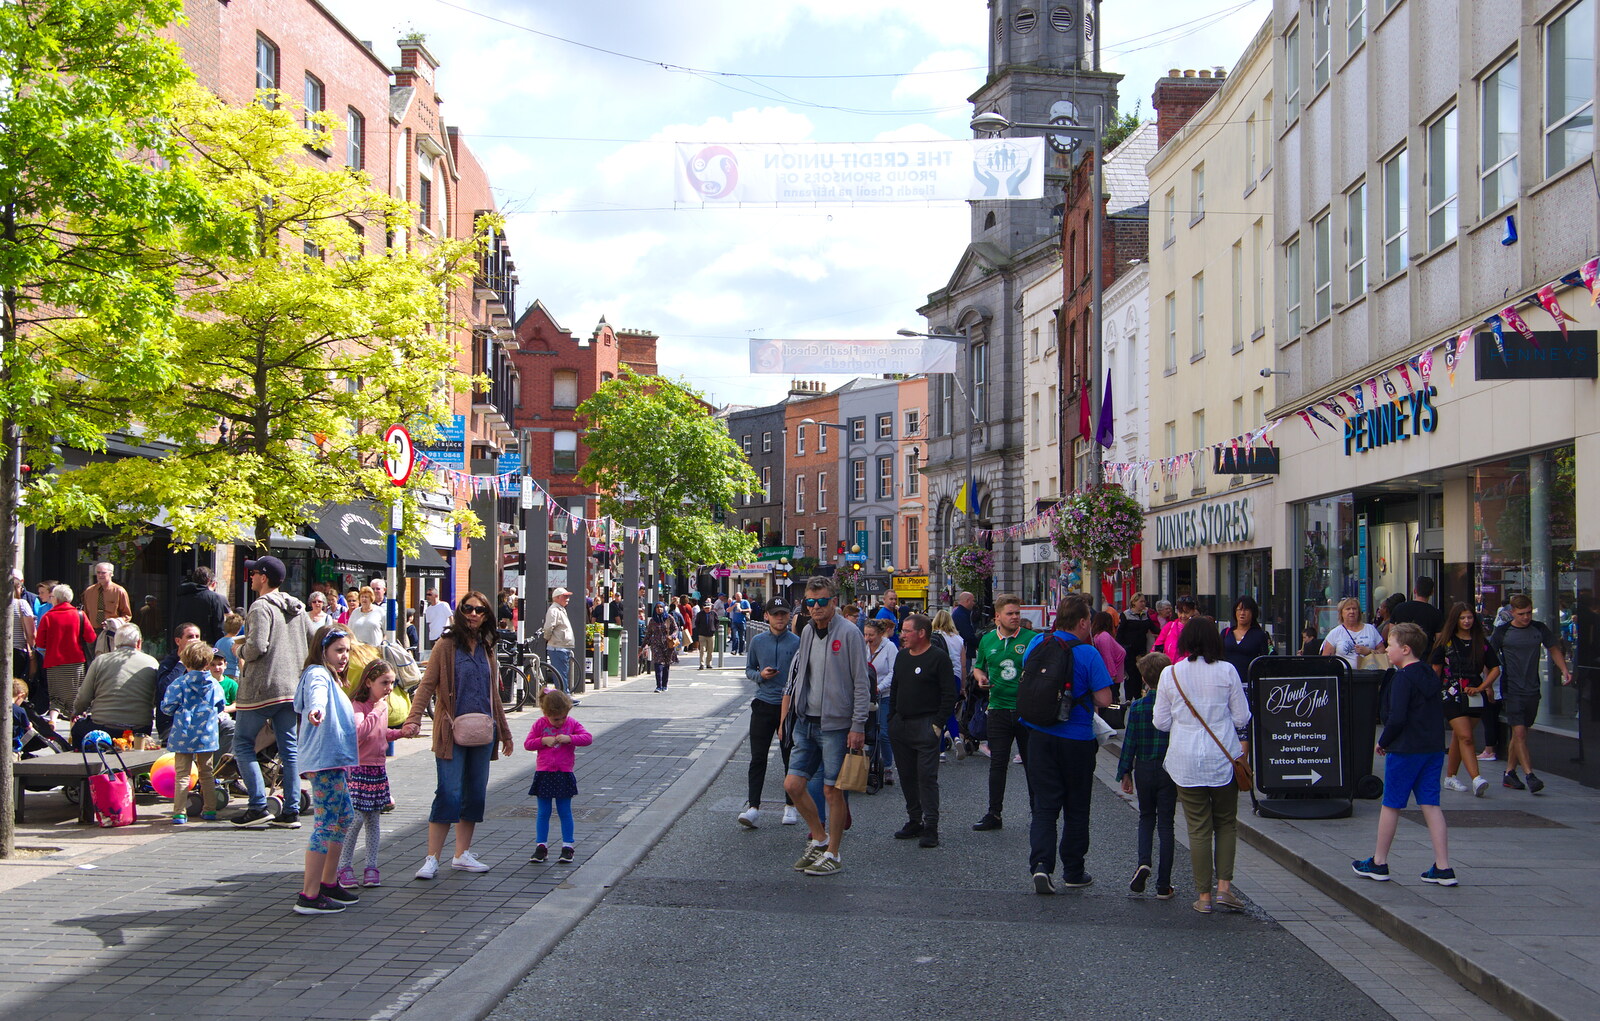 West Street, Drogheda from The Fleadh Cheoil na hÉireann, Droichead Átha, Co. Louth, Ireland - 13th August 2019